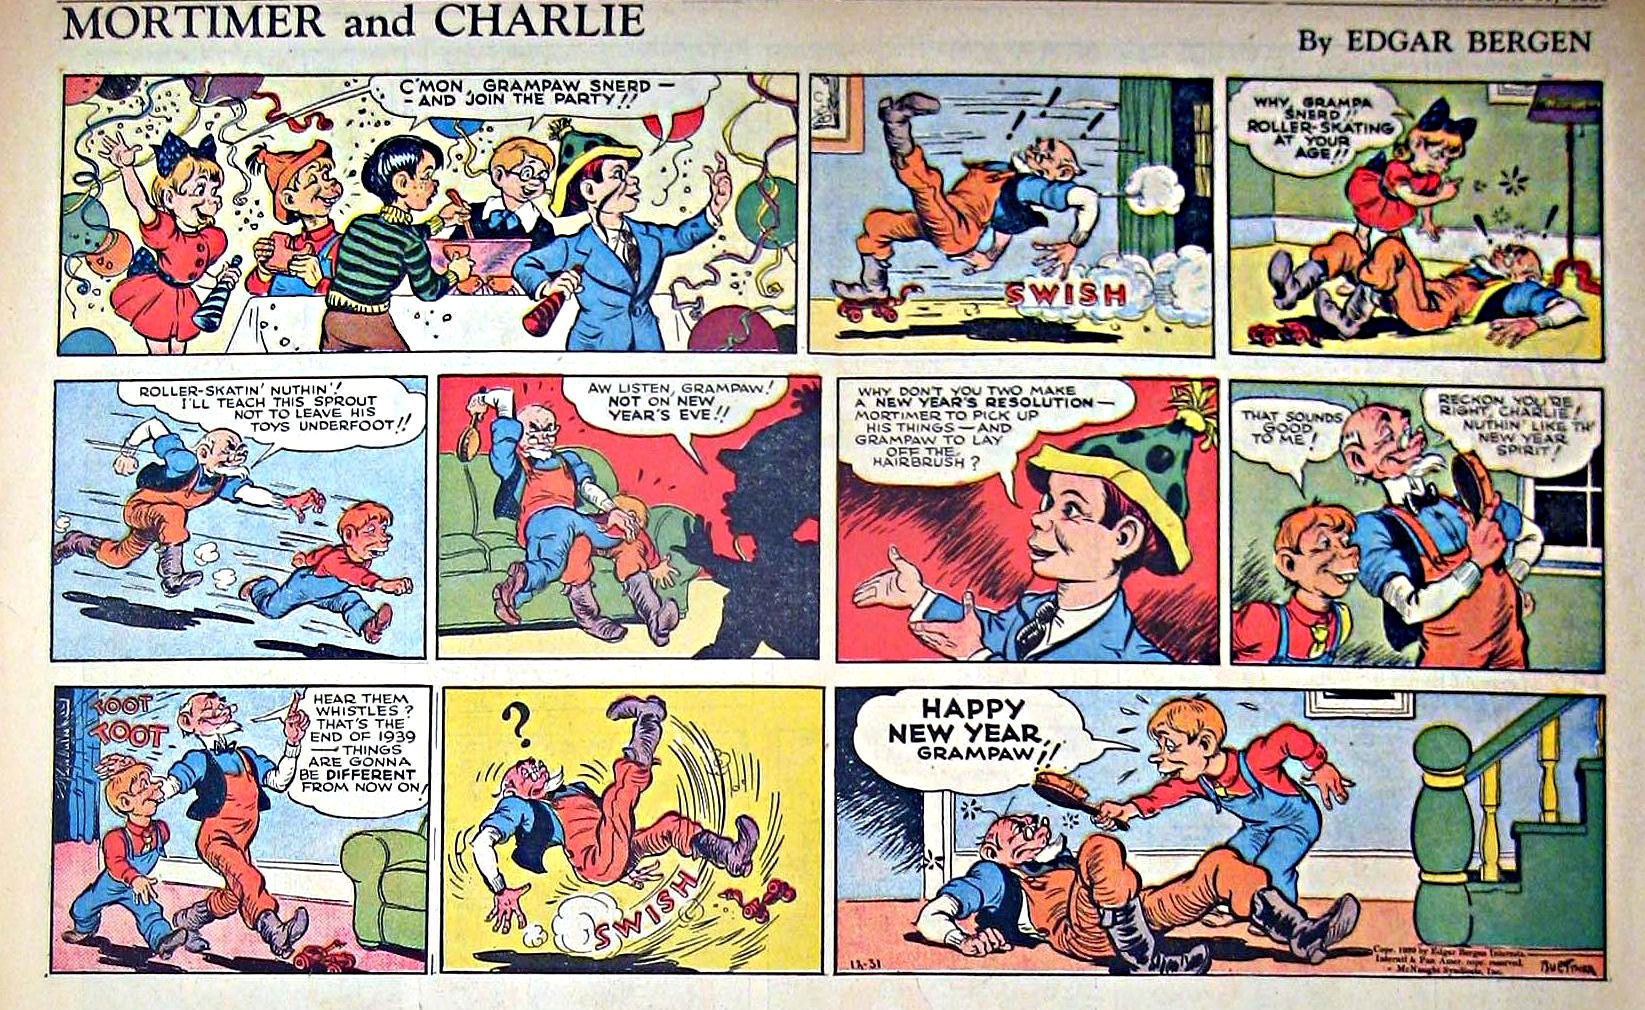 Mortimer and Charlie, December 31, 1939